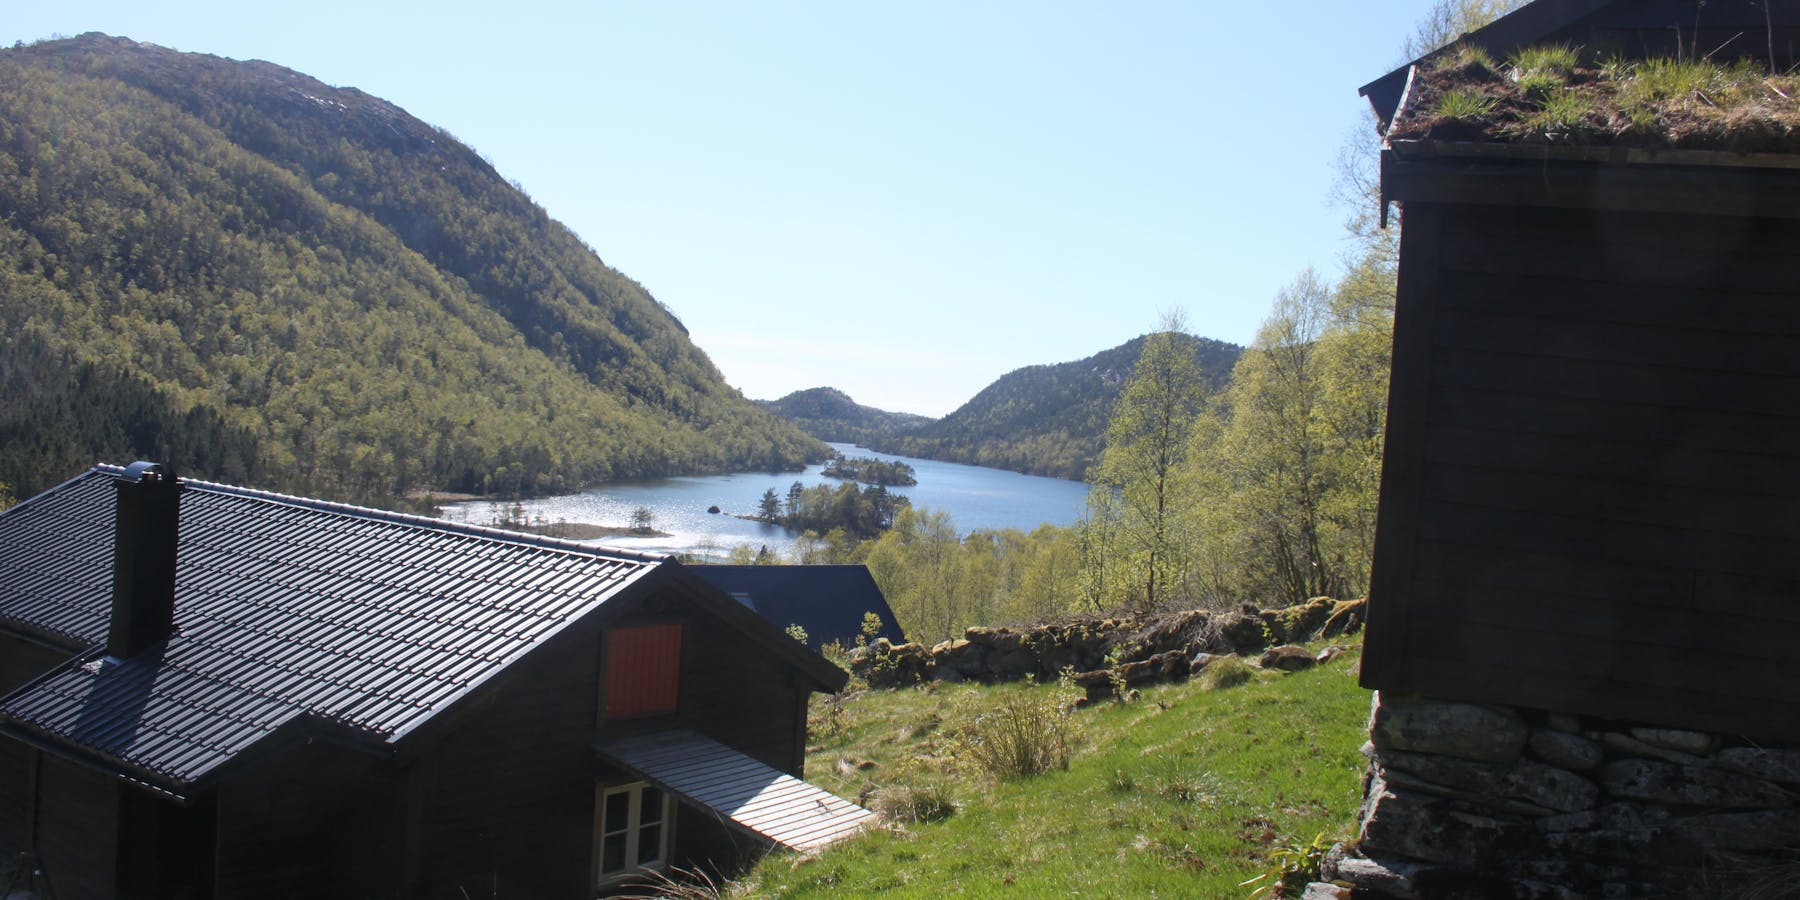 Frå dei gamle husmannsplassane inst Longåsdalen i Vikebygd er det god utsikt.
Foto: Arne Frøkedal